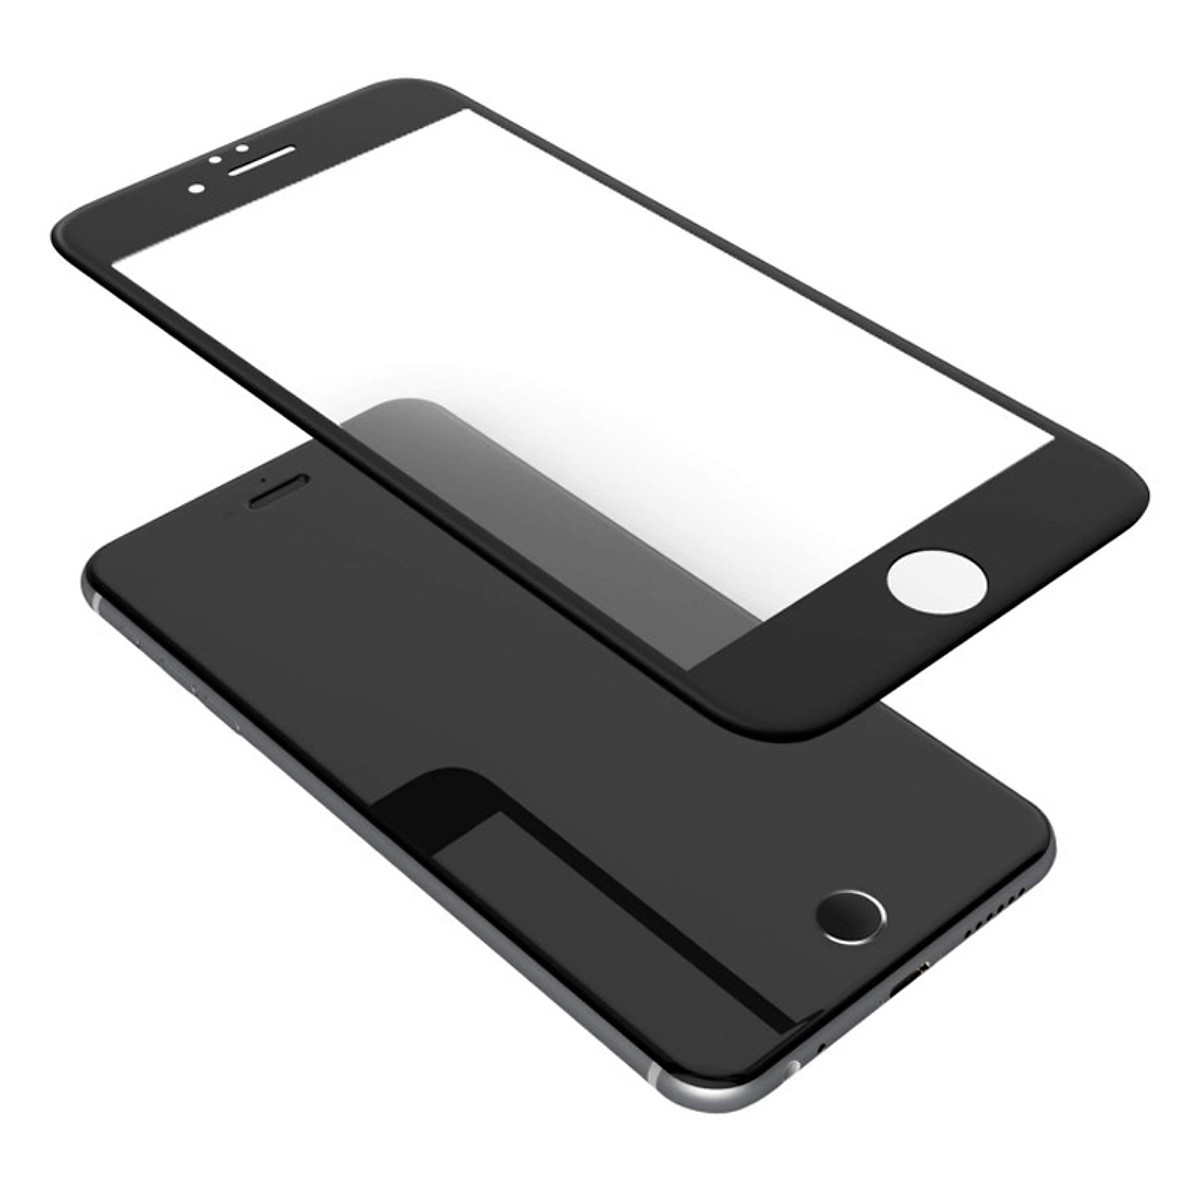 Trắng - Miếng dán kính cường lực 3D full màn hình cho iPhone SE 2020 hiệu Nillkin CP+ Max (Mỏng 0.3mm, Kính ACC Japan, Chống Lóa, Hạn Chế Vân Tay) - Hàng chính hãng